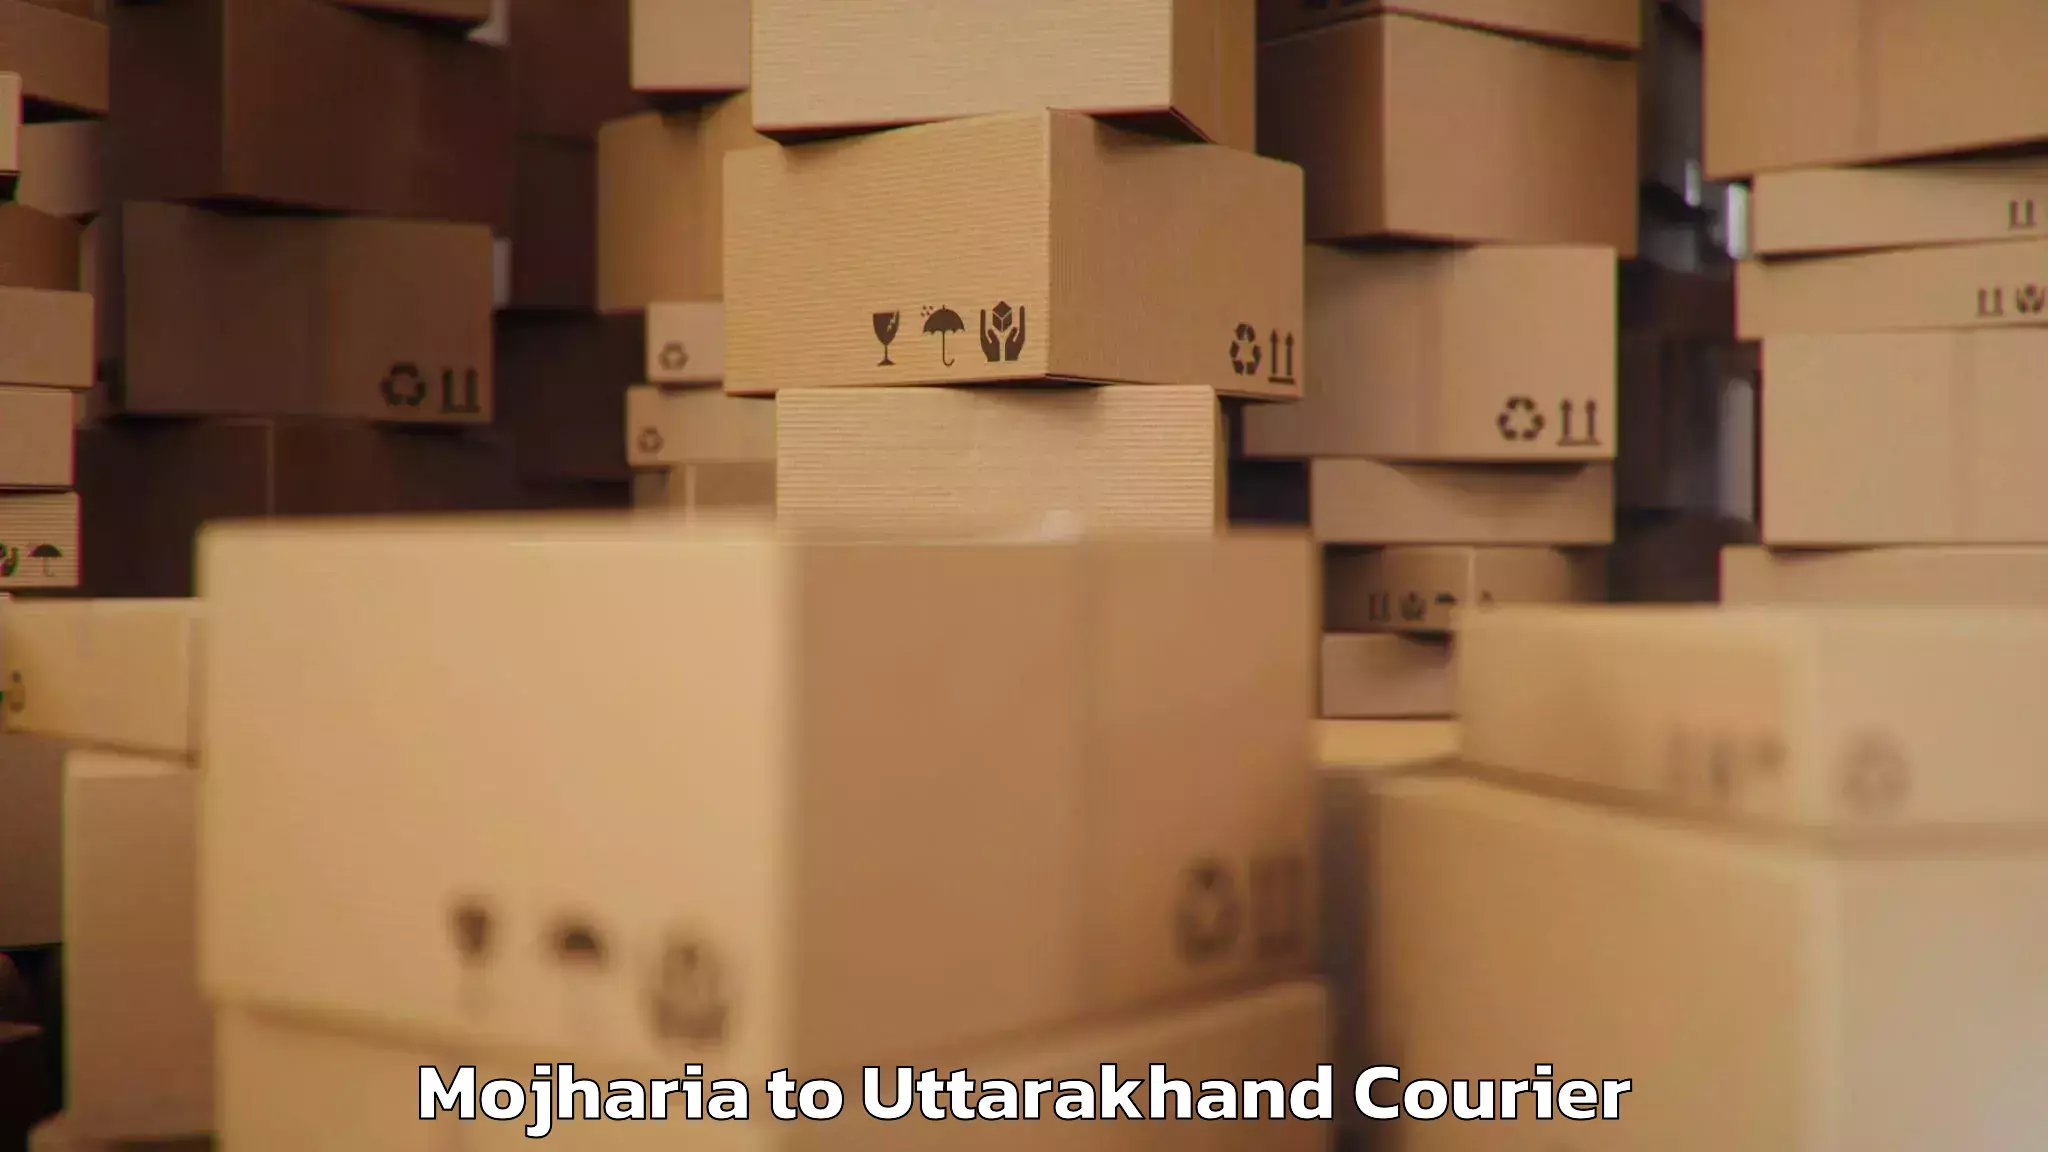 Automated luggage transport Mojharia to Uttarakhand